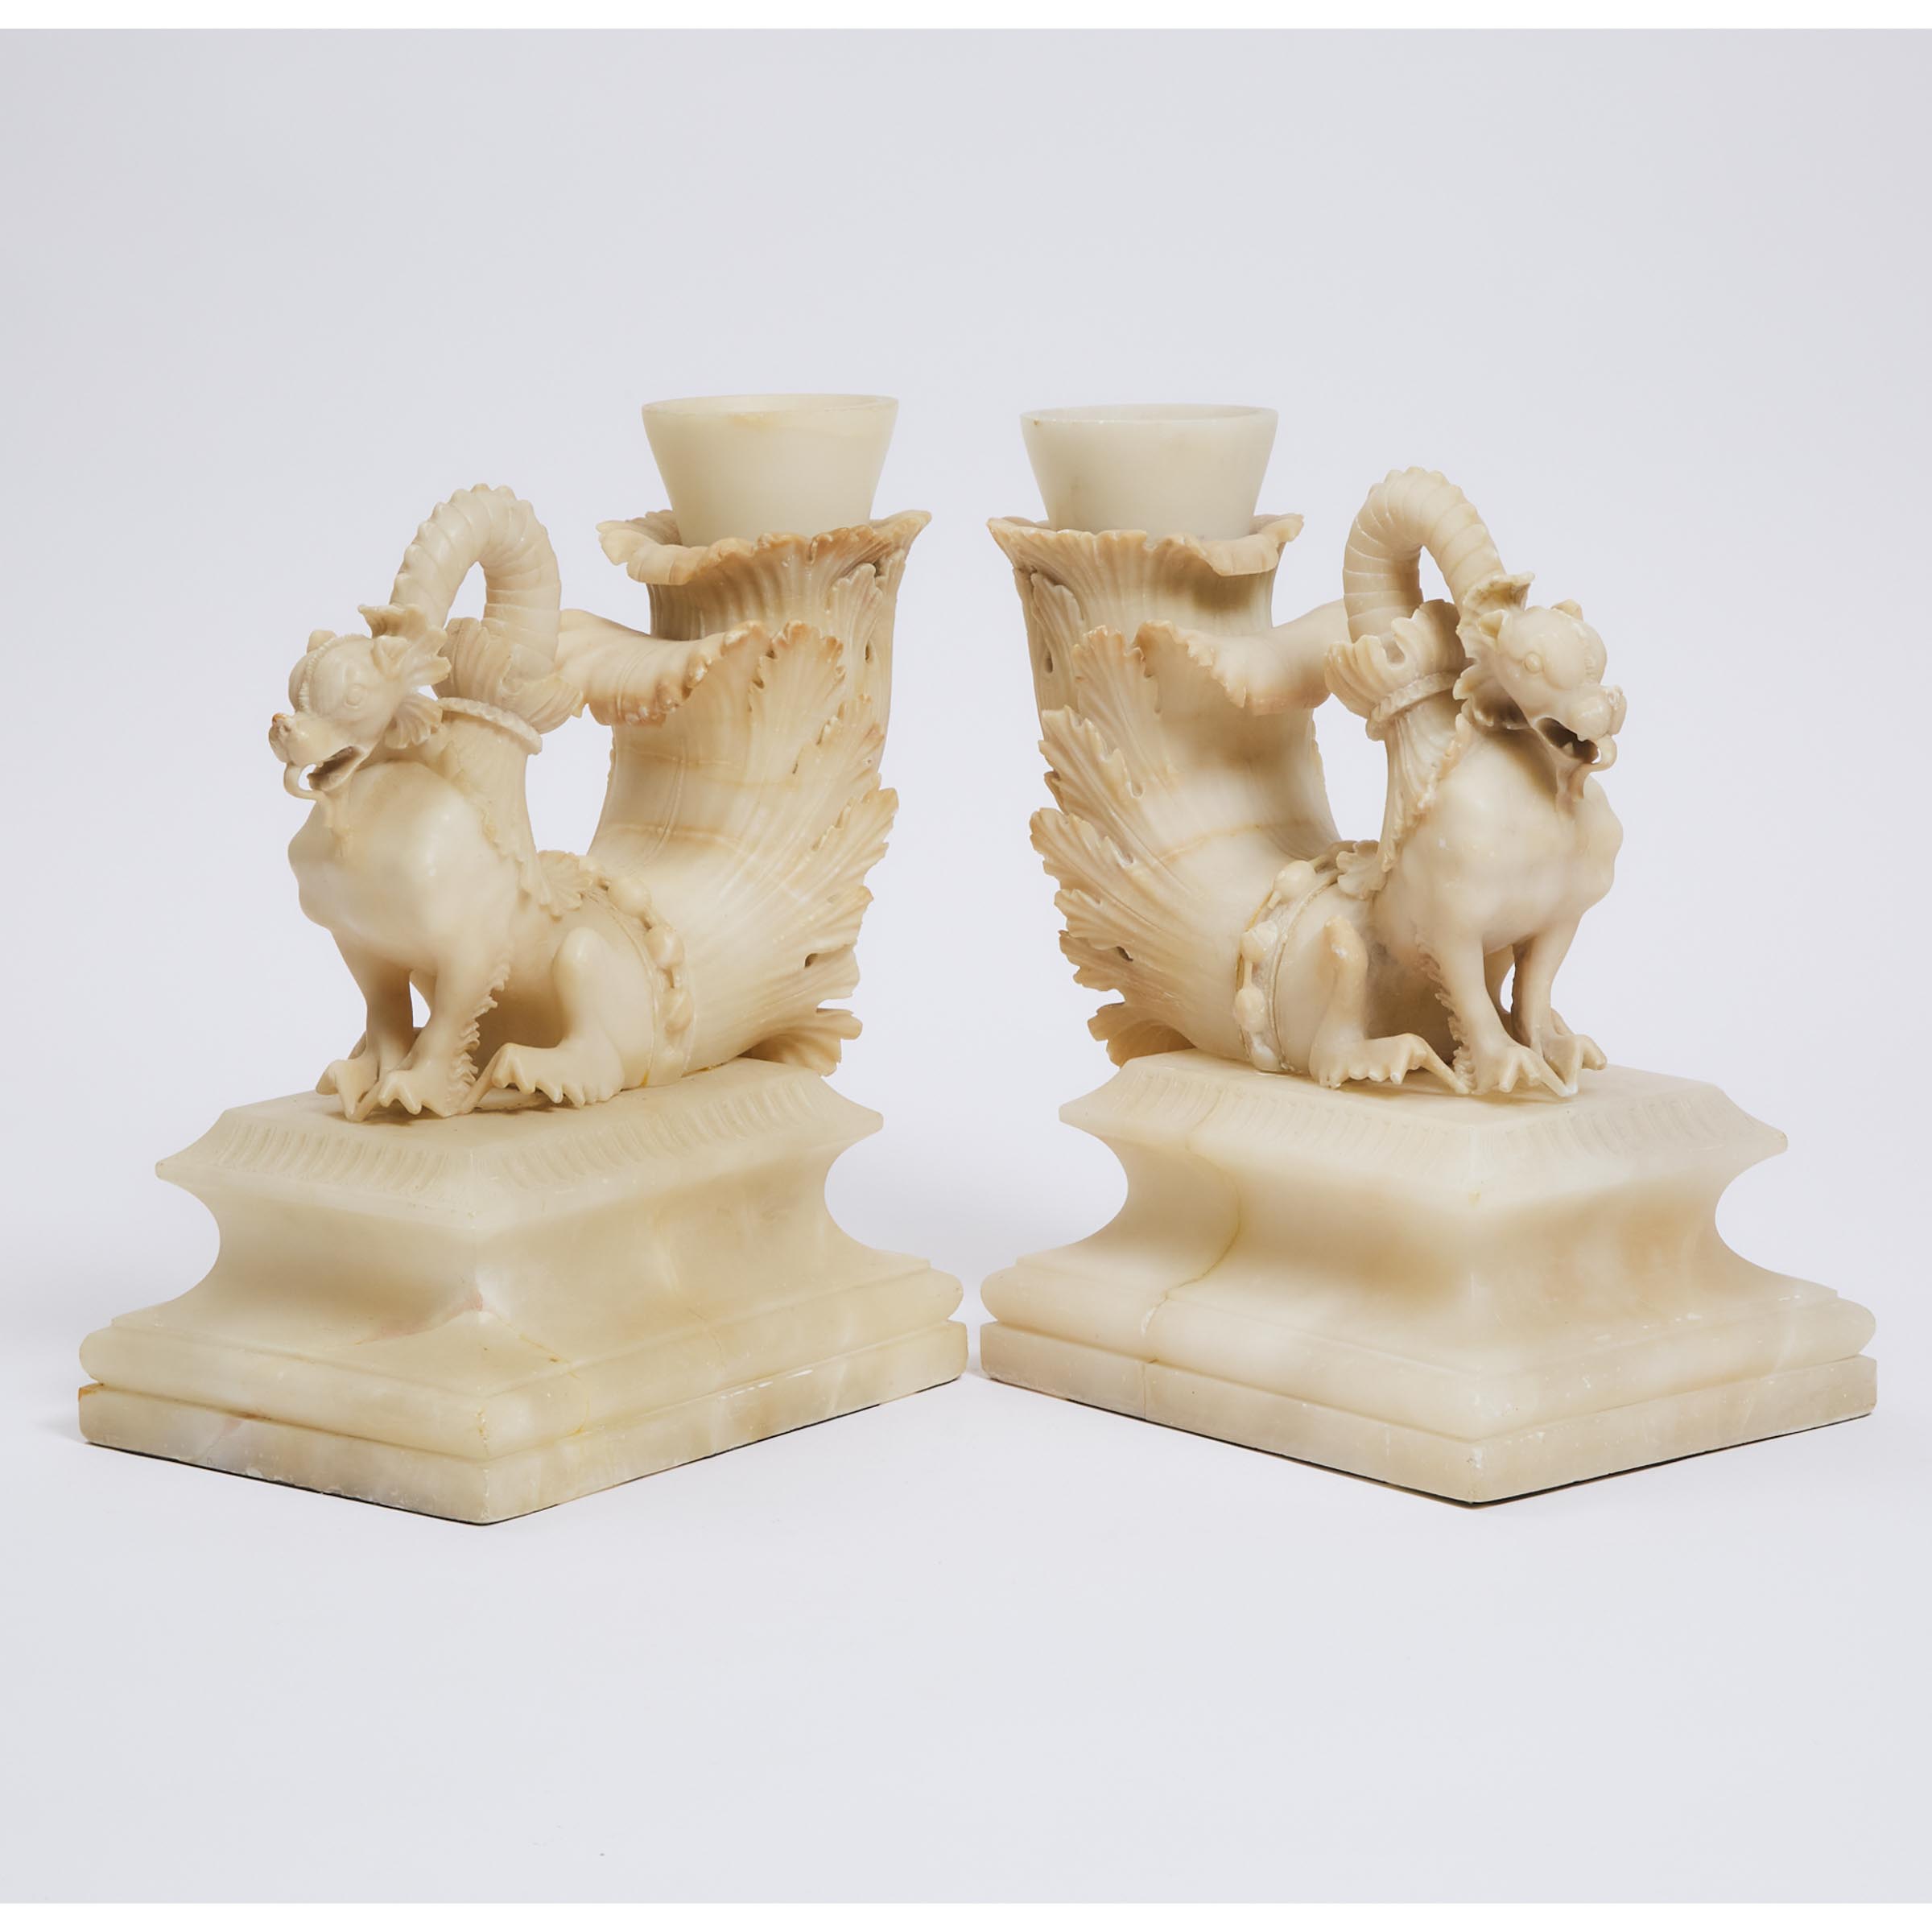 Pair of Italian Carved Dragon Form Cornucopia Vases, 19th century